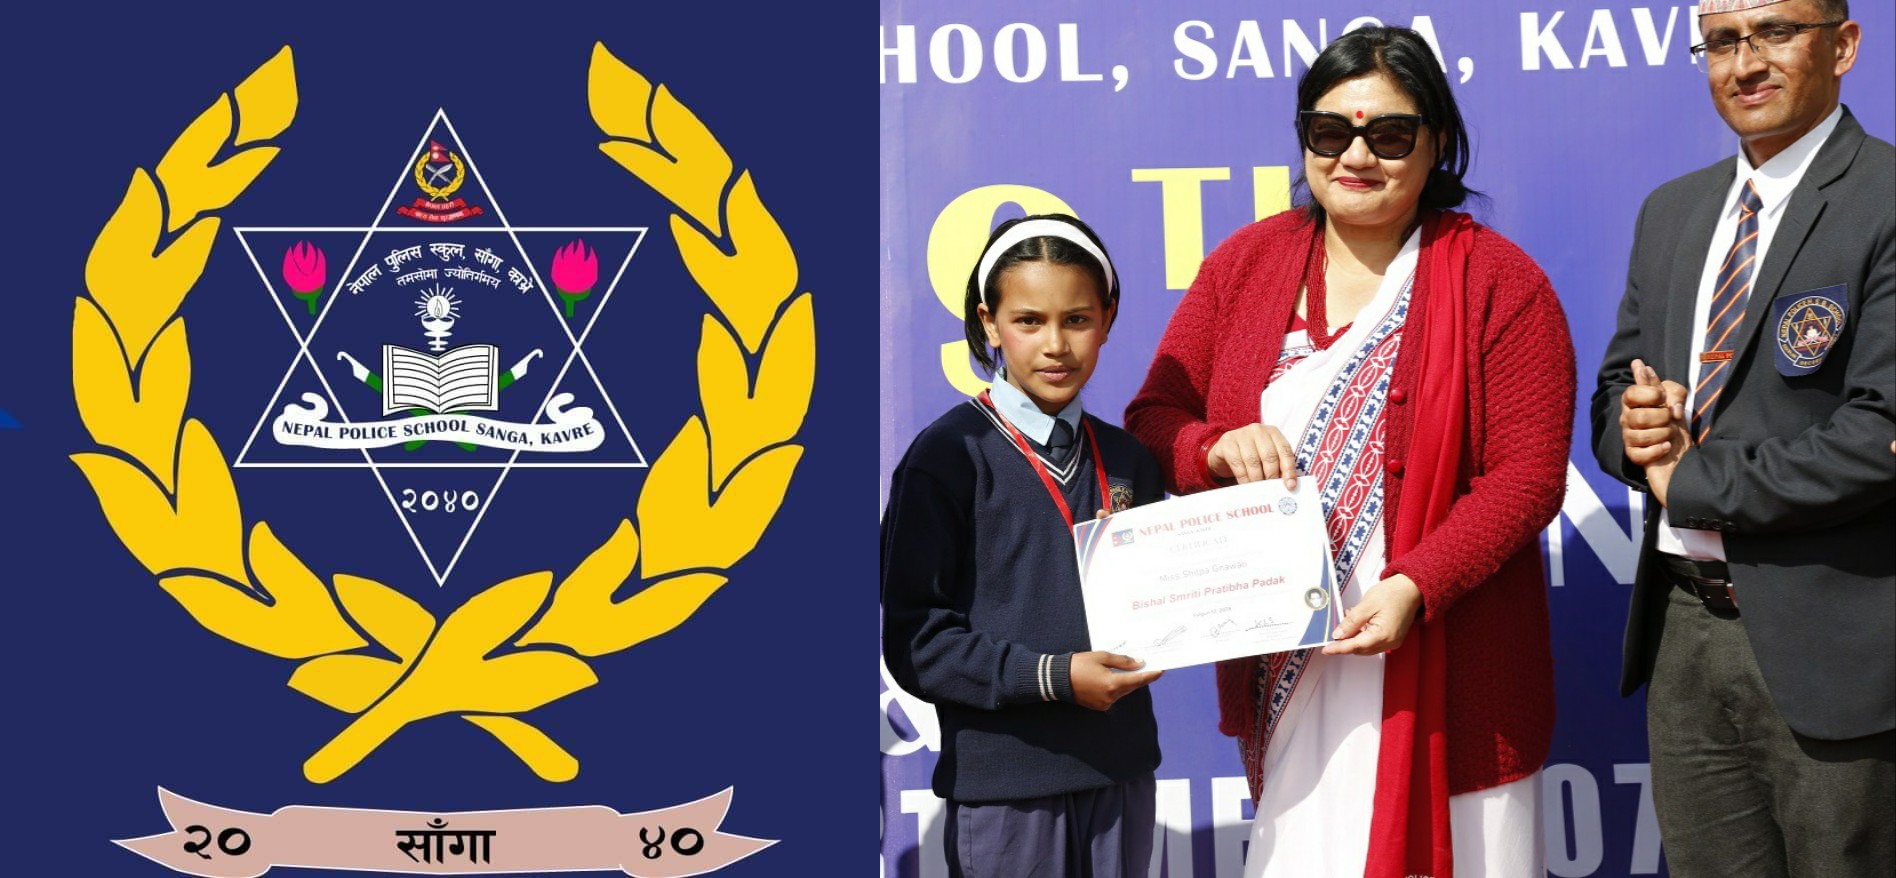  नेपाल प्रहरी स्कुल साँगाको ३९औं स्थापना दिवसको अवसरमा विशेष कार्यक्रम